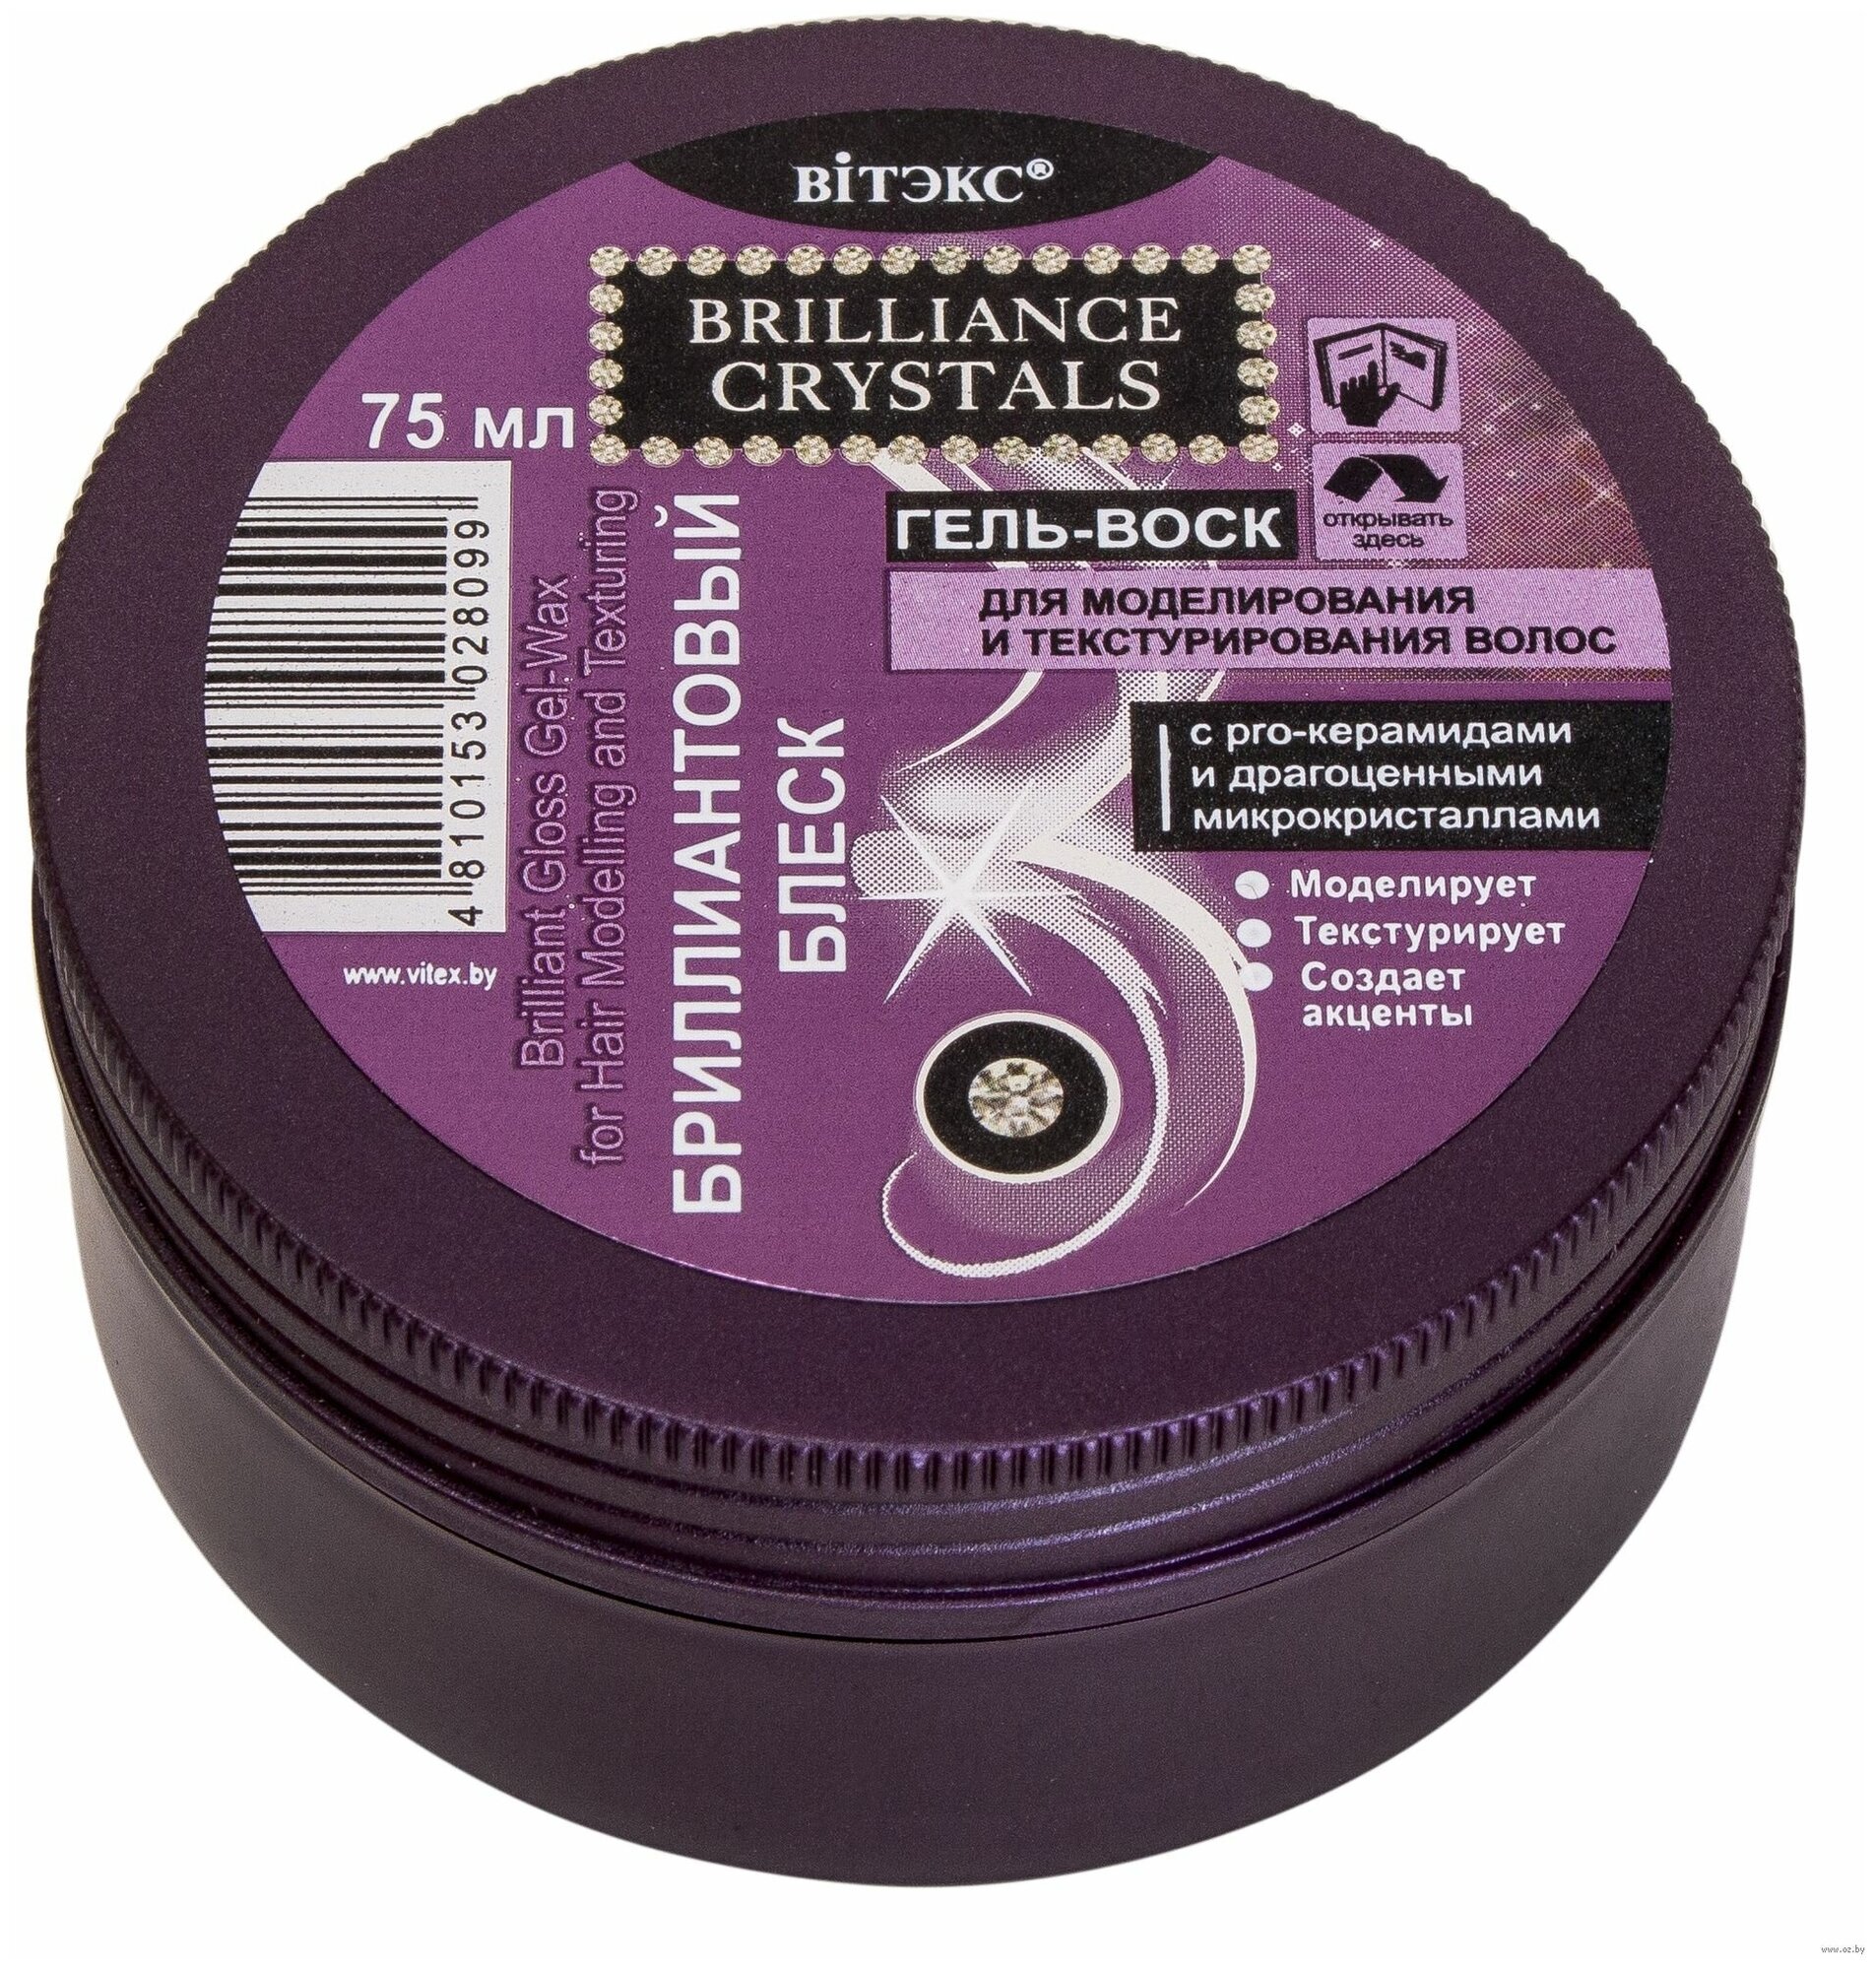 Brilliance Crystals Гель-воск Бриллиантовый Блеск д/моделир. и текстуриров. волос 75мл.